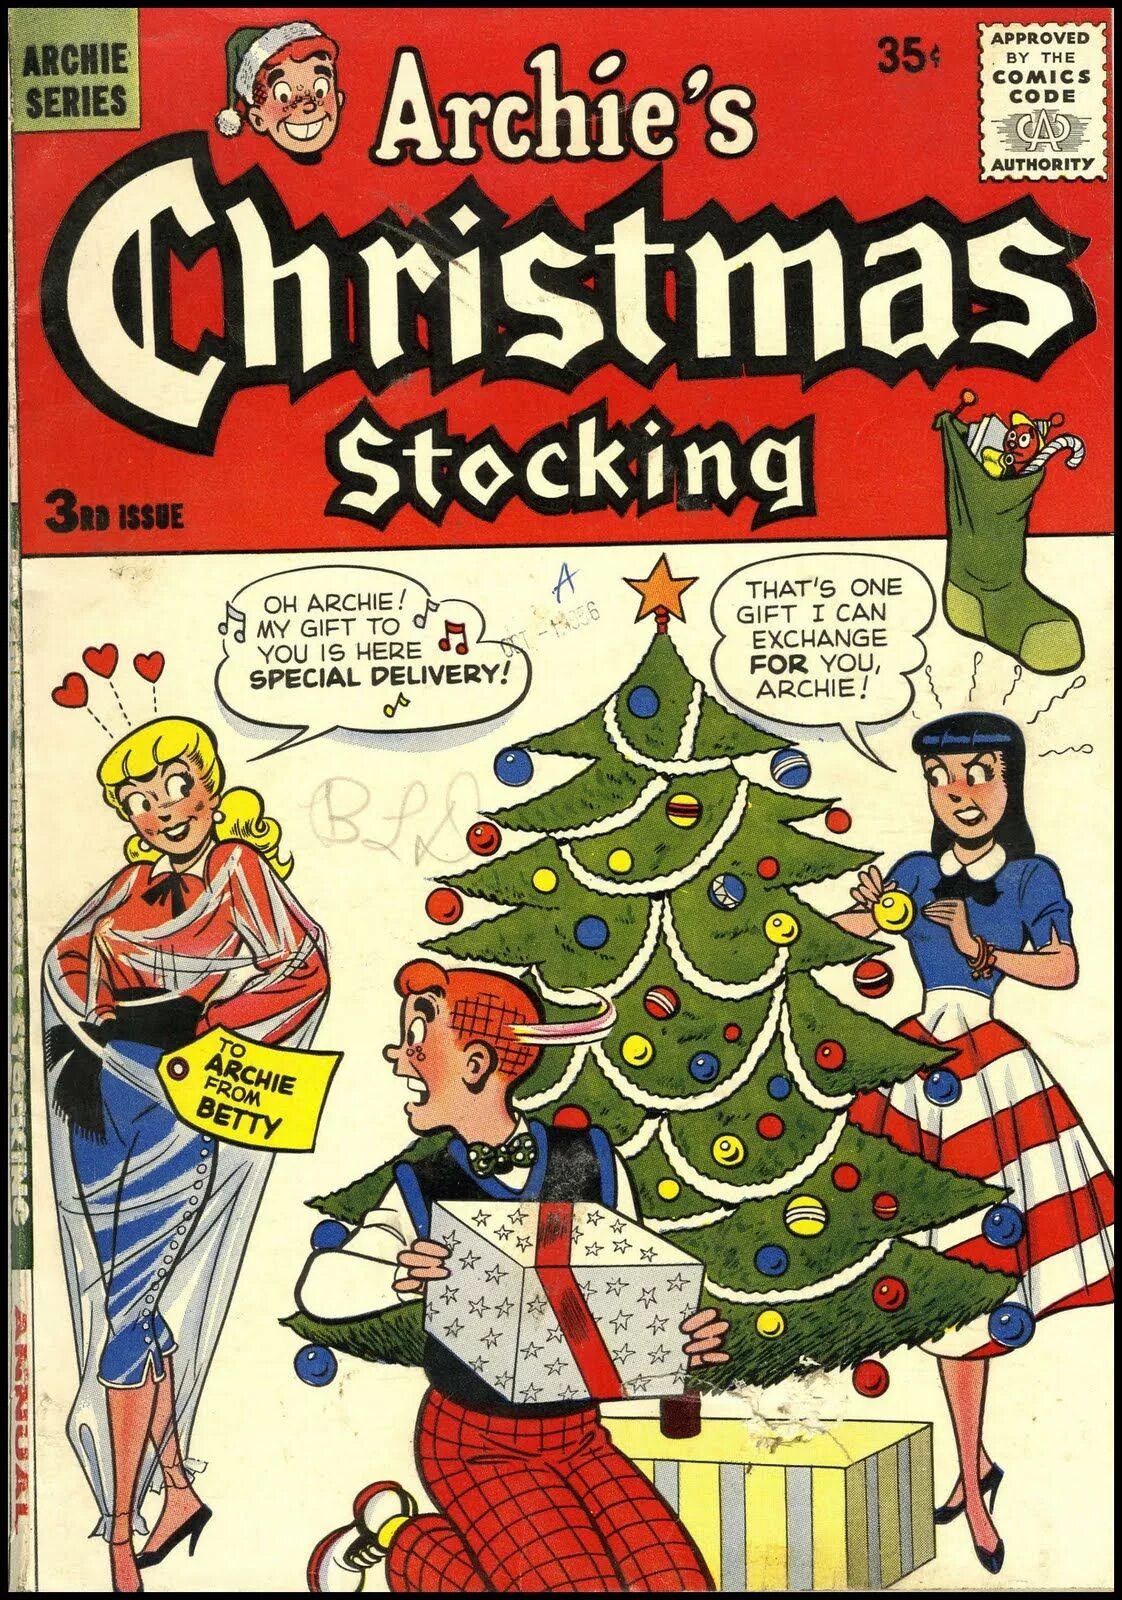 Рождество 1956. Christmas Special. An Island Christmas комикс. Christmas Comic book. Гифт арчи